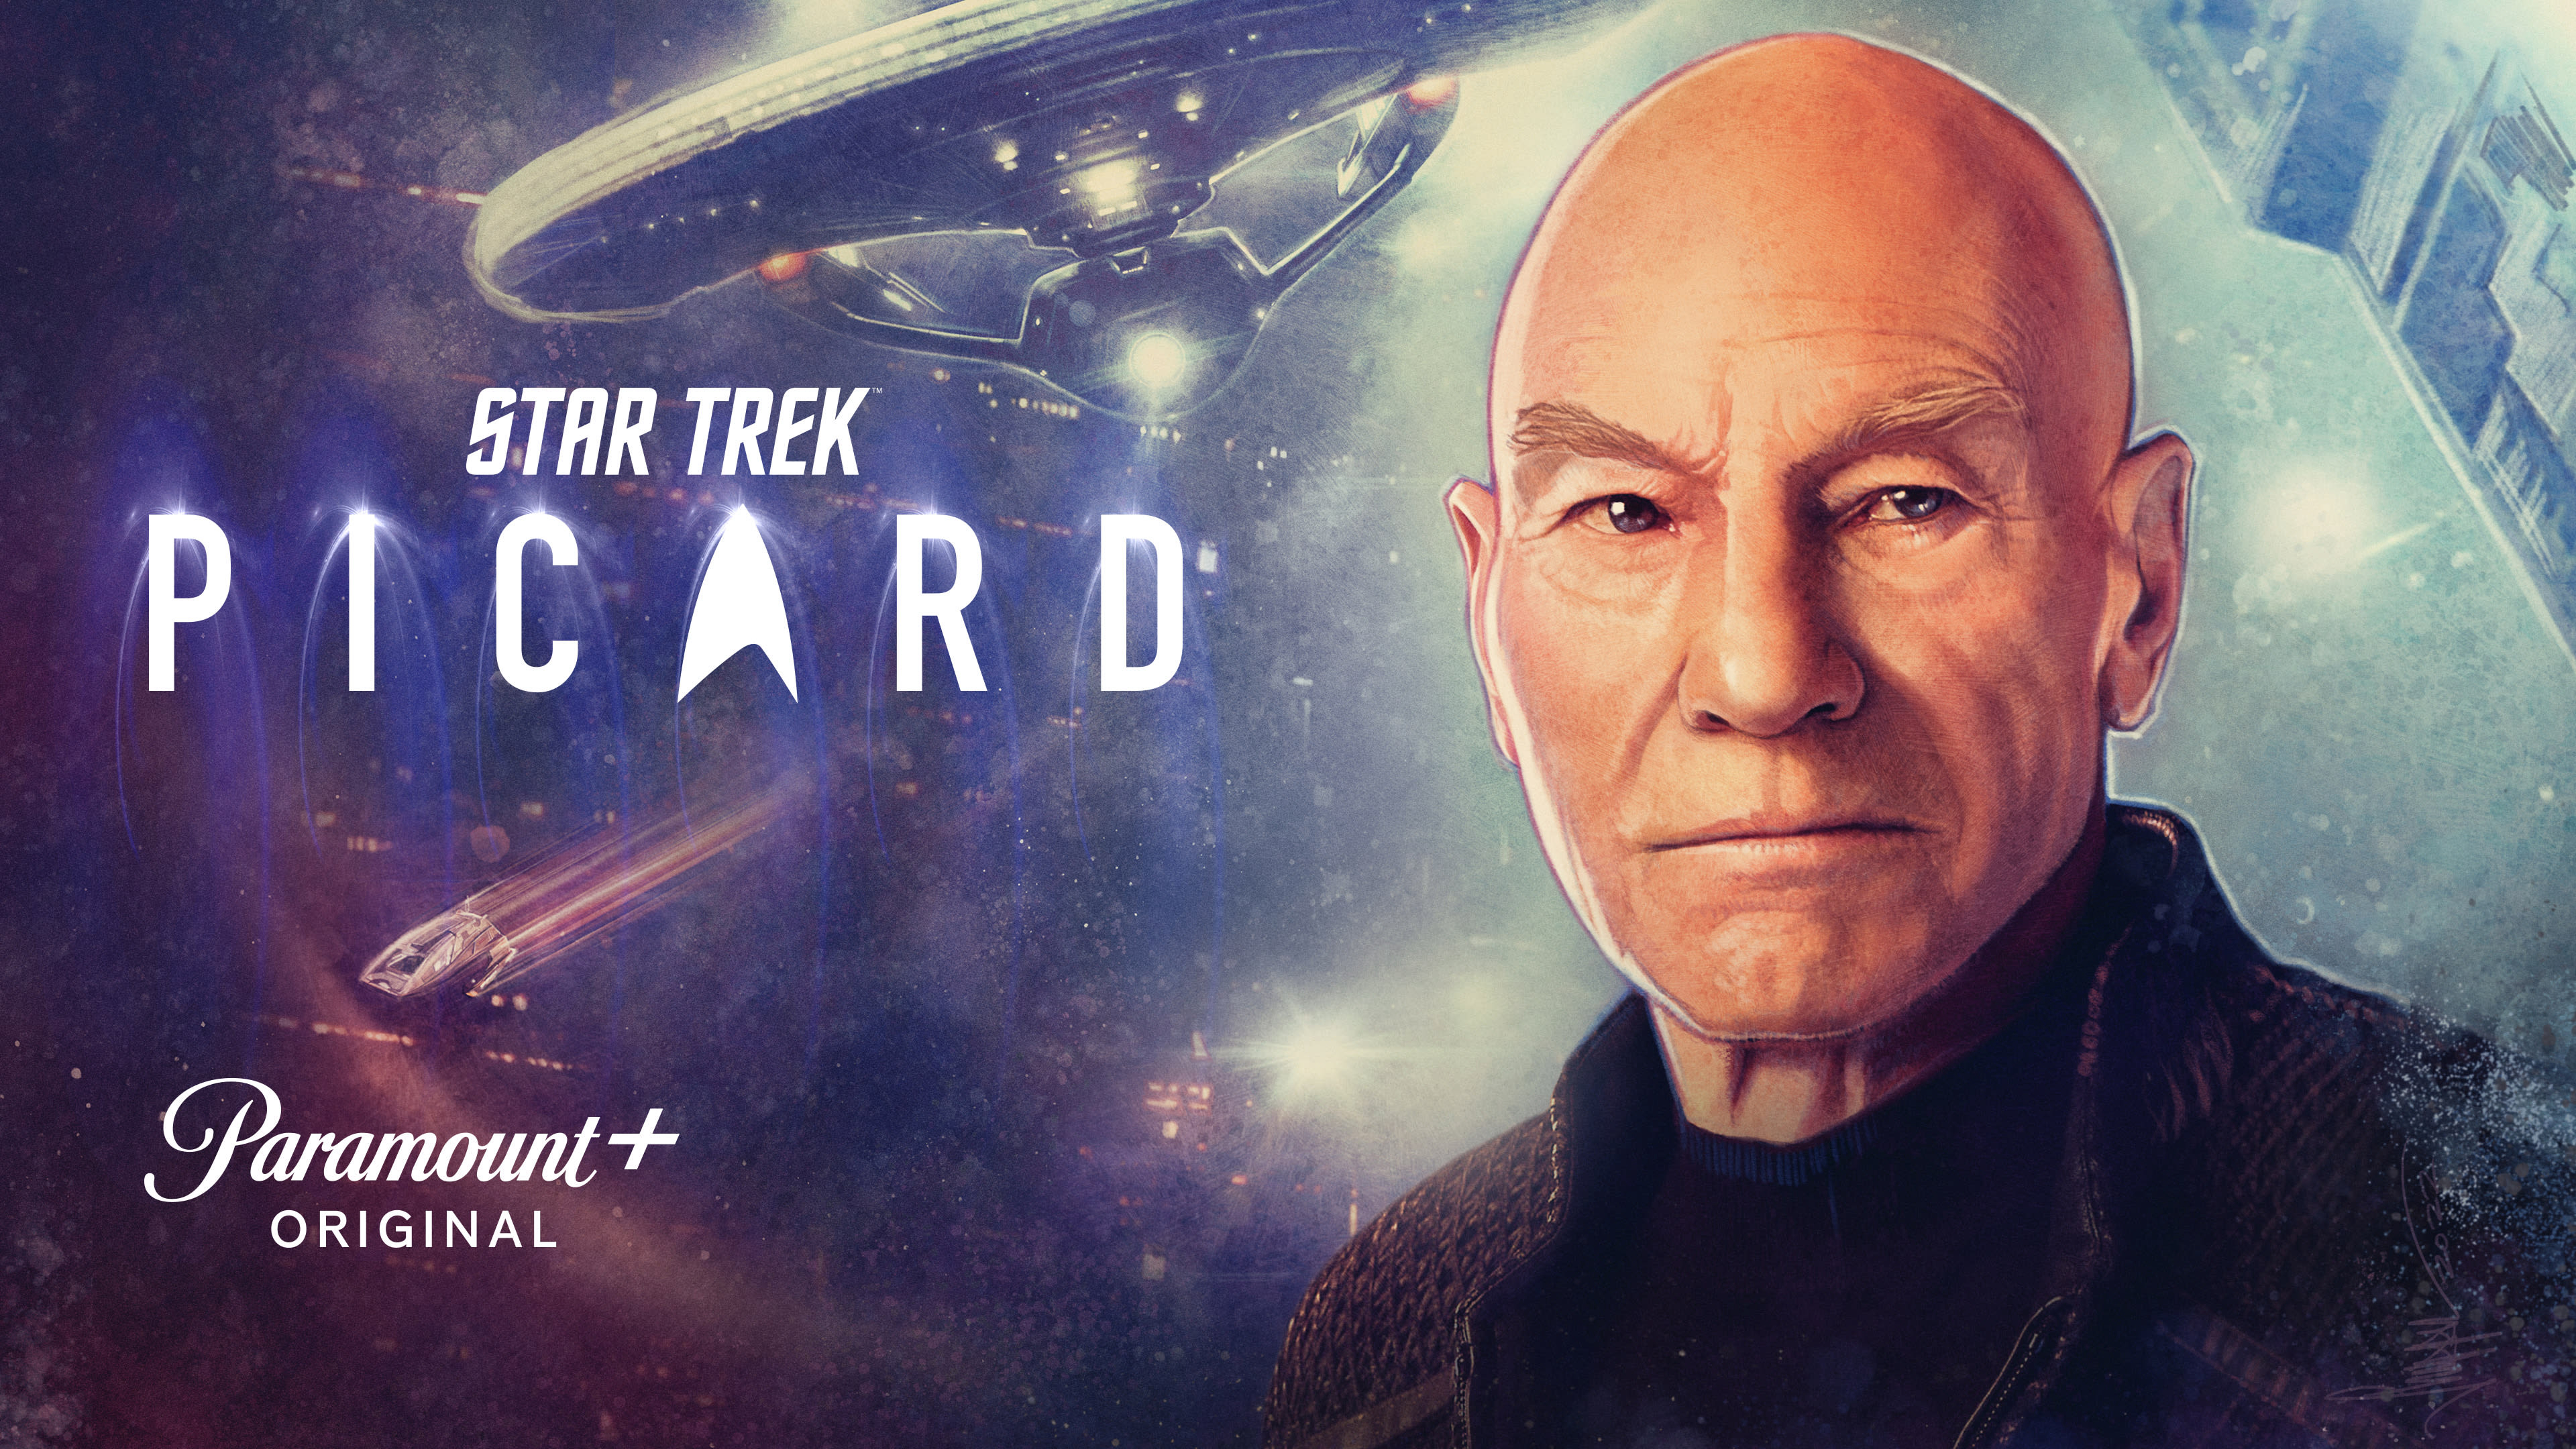 Star Trek: Picard (Season 3) / Star Trek: Picard (Season 3) (2023)